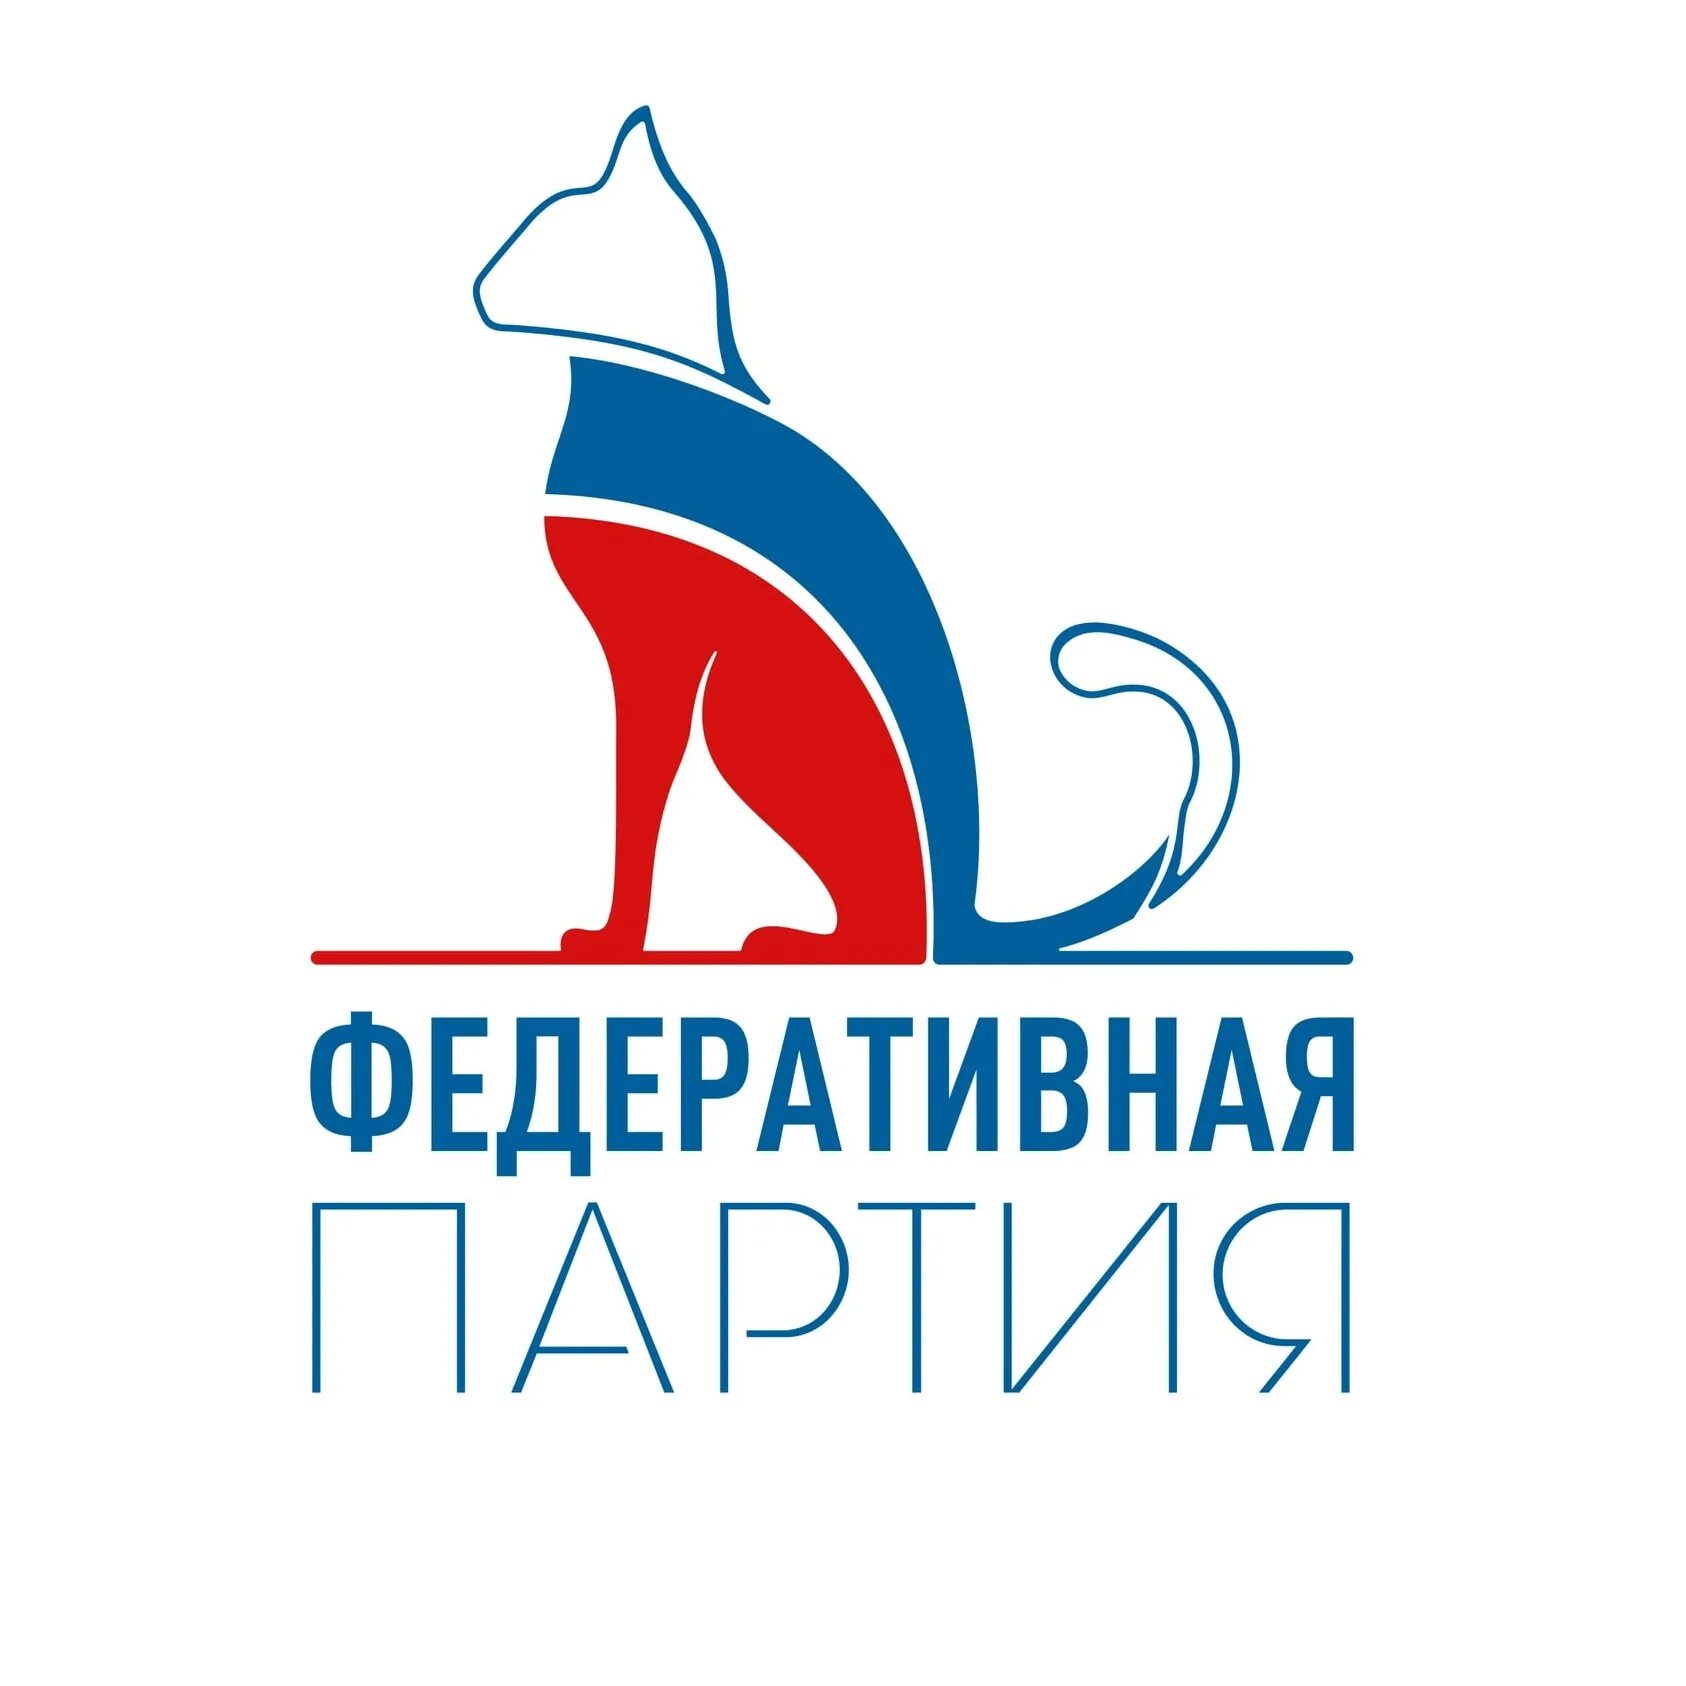 Политические логотипы. Логотипы партий. Эмблемы политических партий России. Эмблемы политических партий